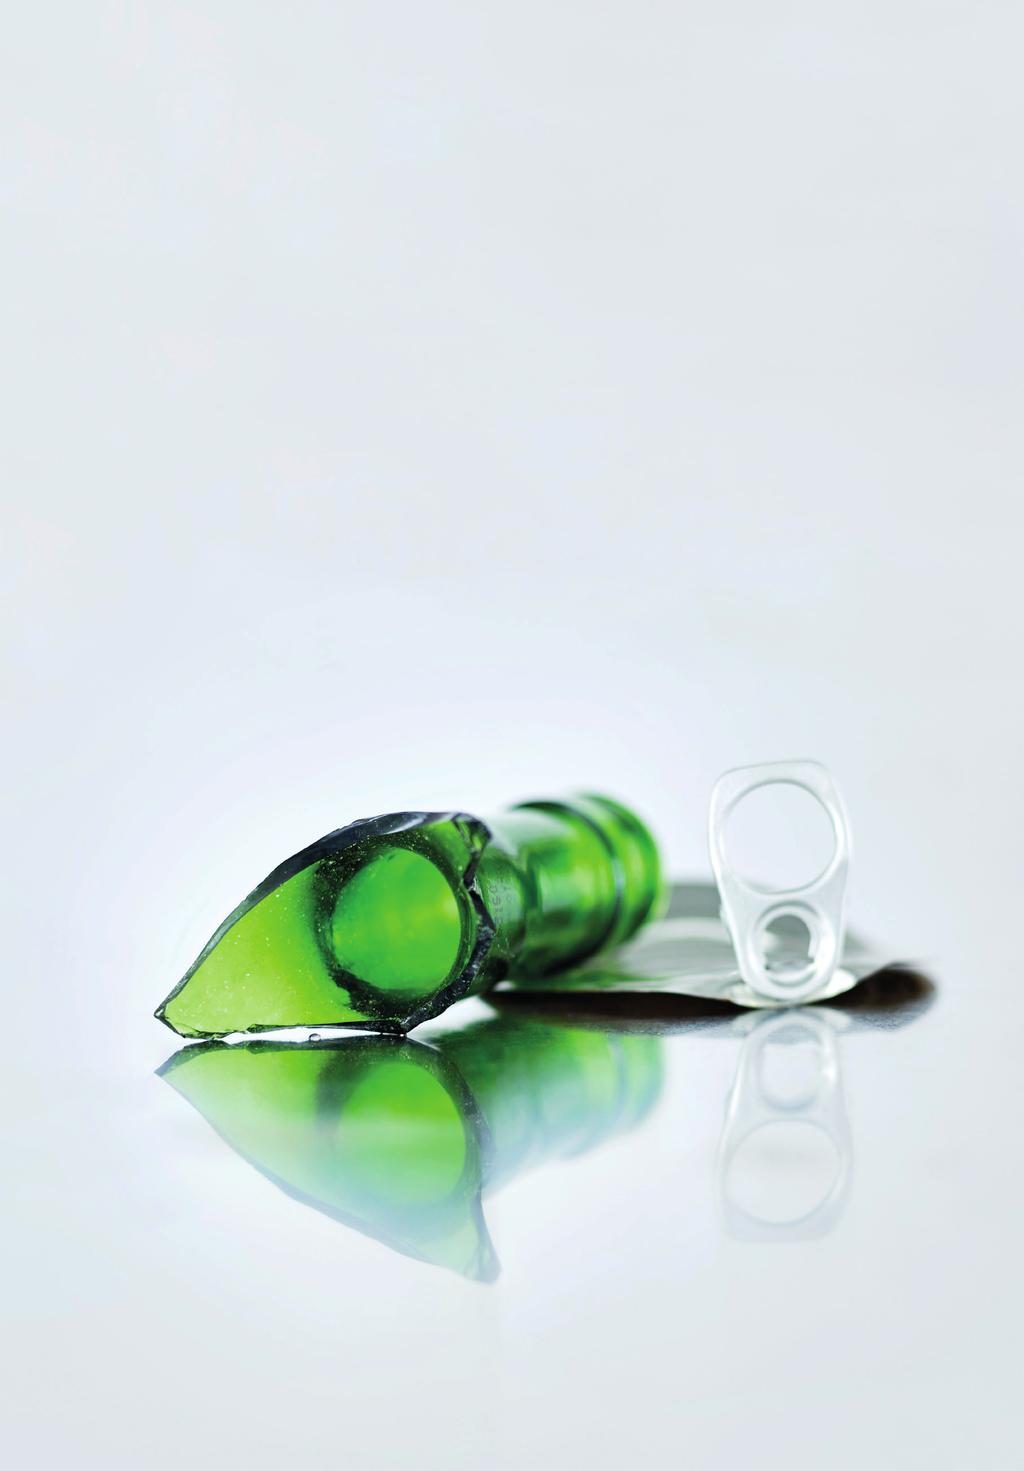 Organiske materialer Lim og plast er ofte nødvendig for at glass emballasje skal kunne brukes